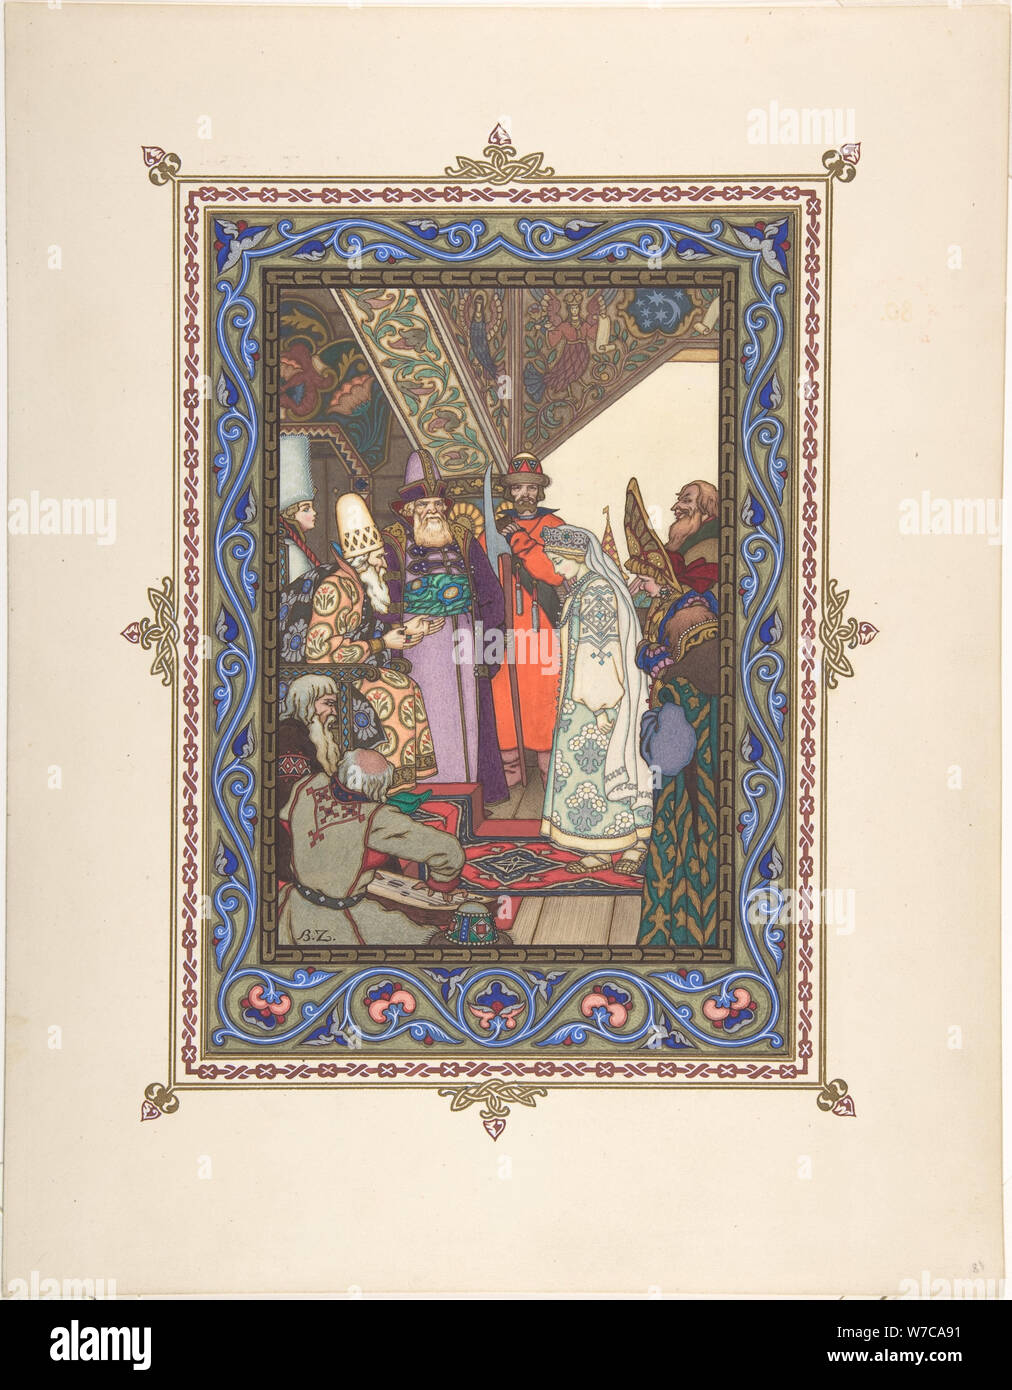 Illustration pour le conte de fées Snegurochka, ch. 1925. Artiste : Zvorykin, Boris Vasilievich (1872-après 1935) Banque D'Images